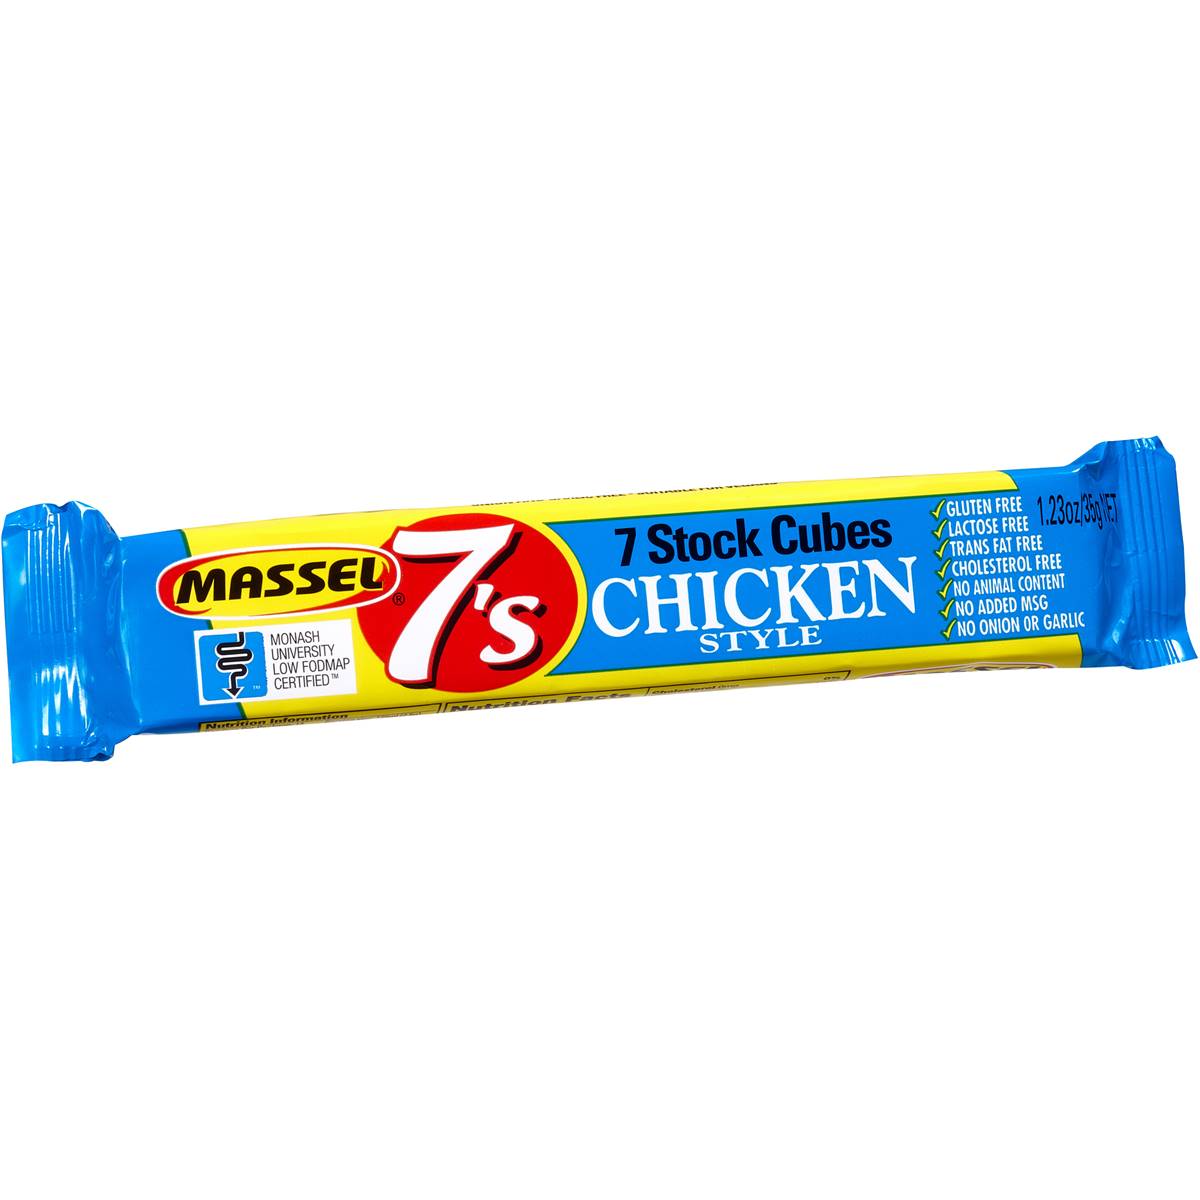 Massel Stock Cubes Chicken GF 7pk 35g